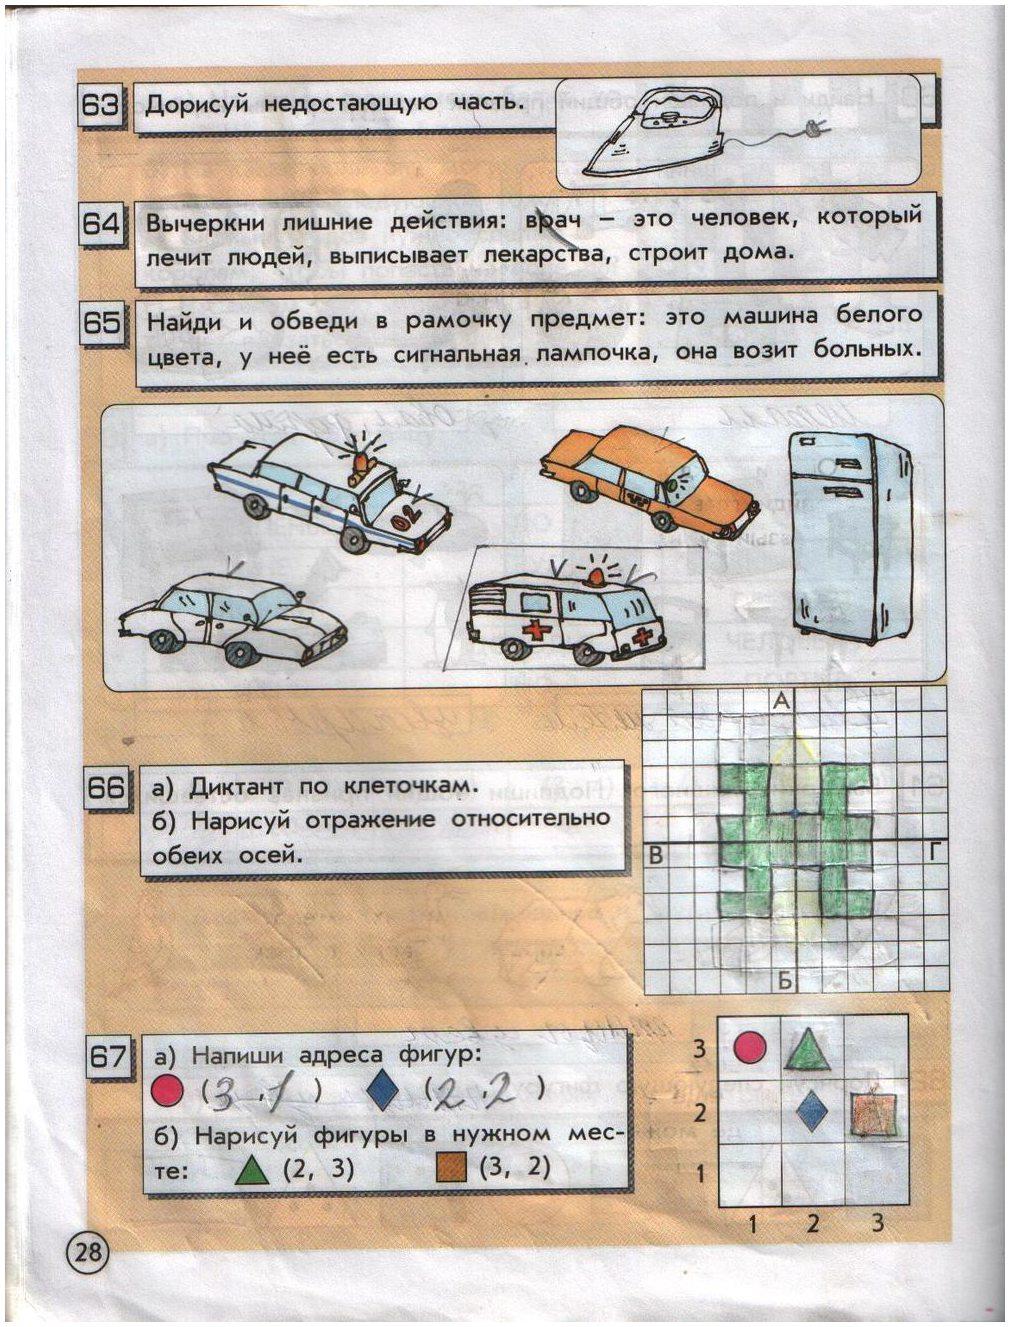 ГДЗ Информатика 2 класс часть 1 страница 28 Горячев, Горина